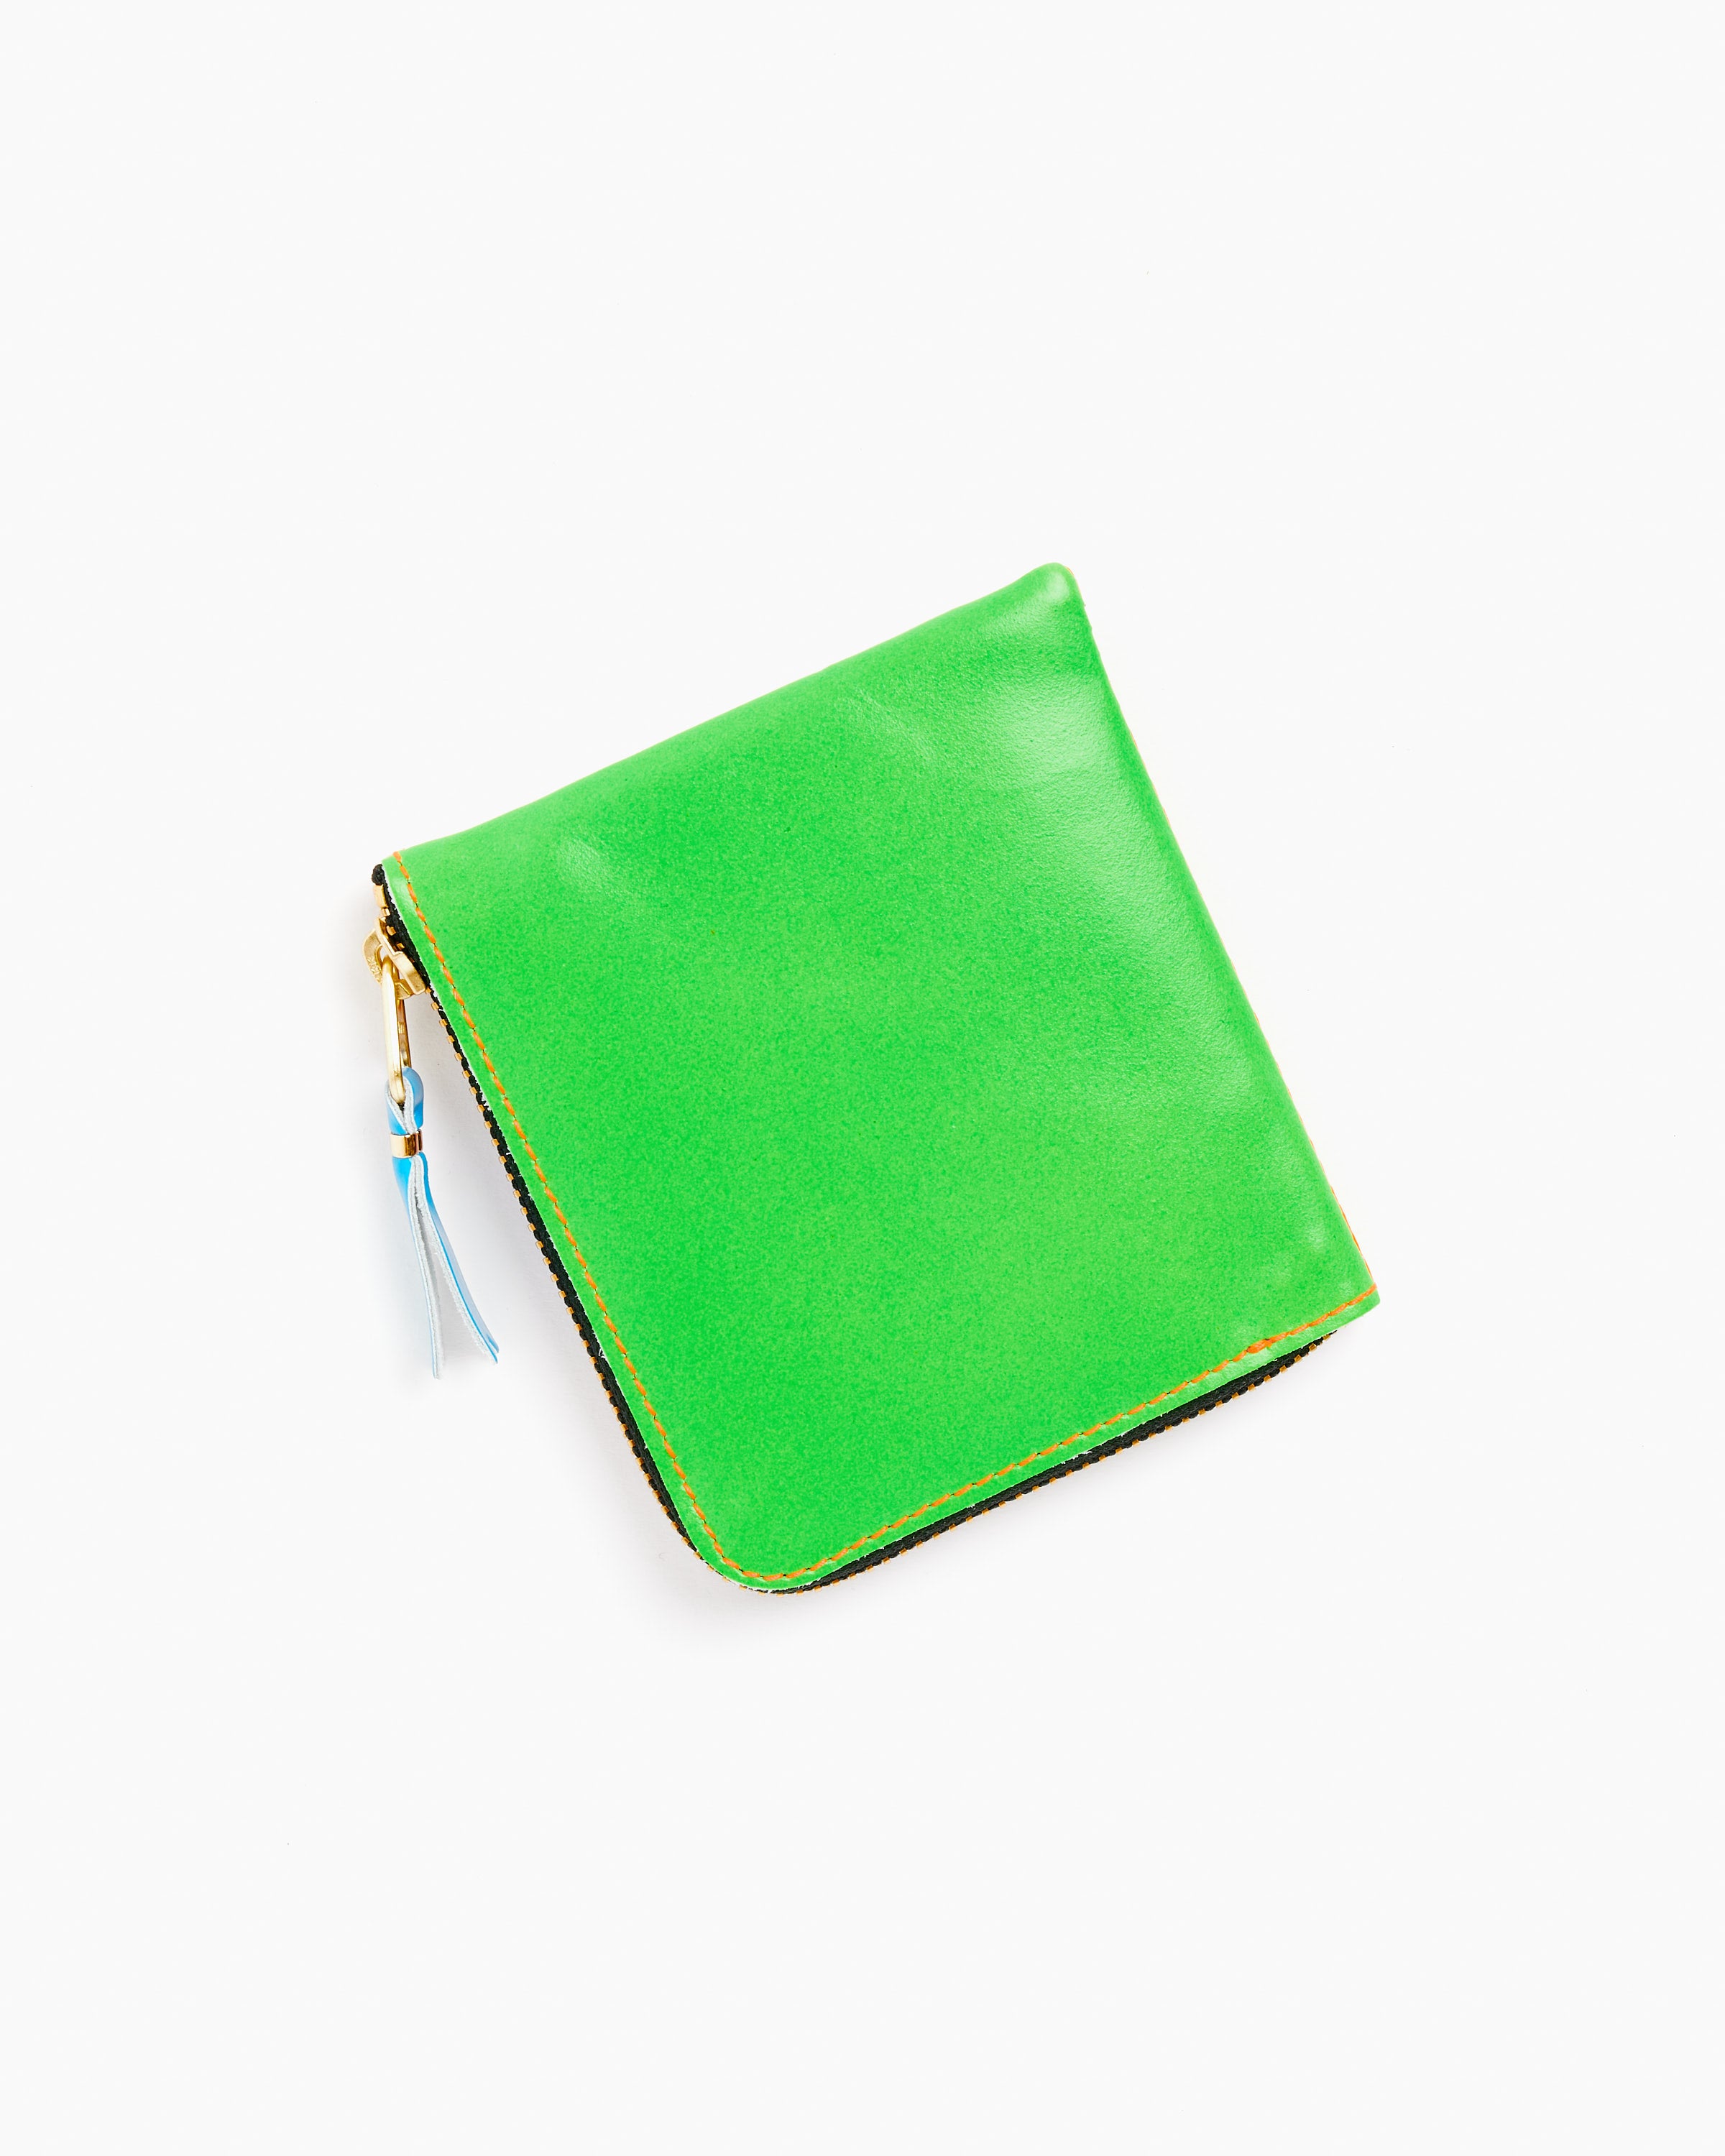 Super Fluo Half Zip Wallet in Green/Orange